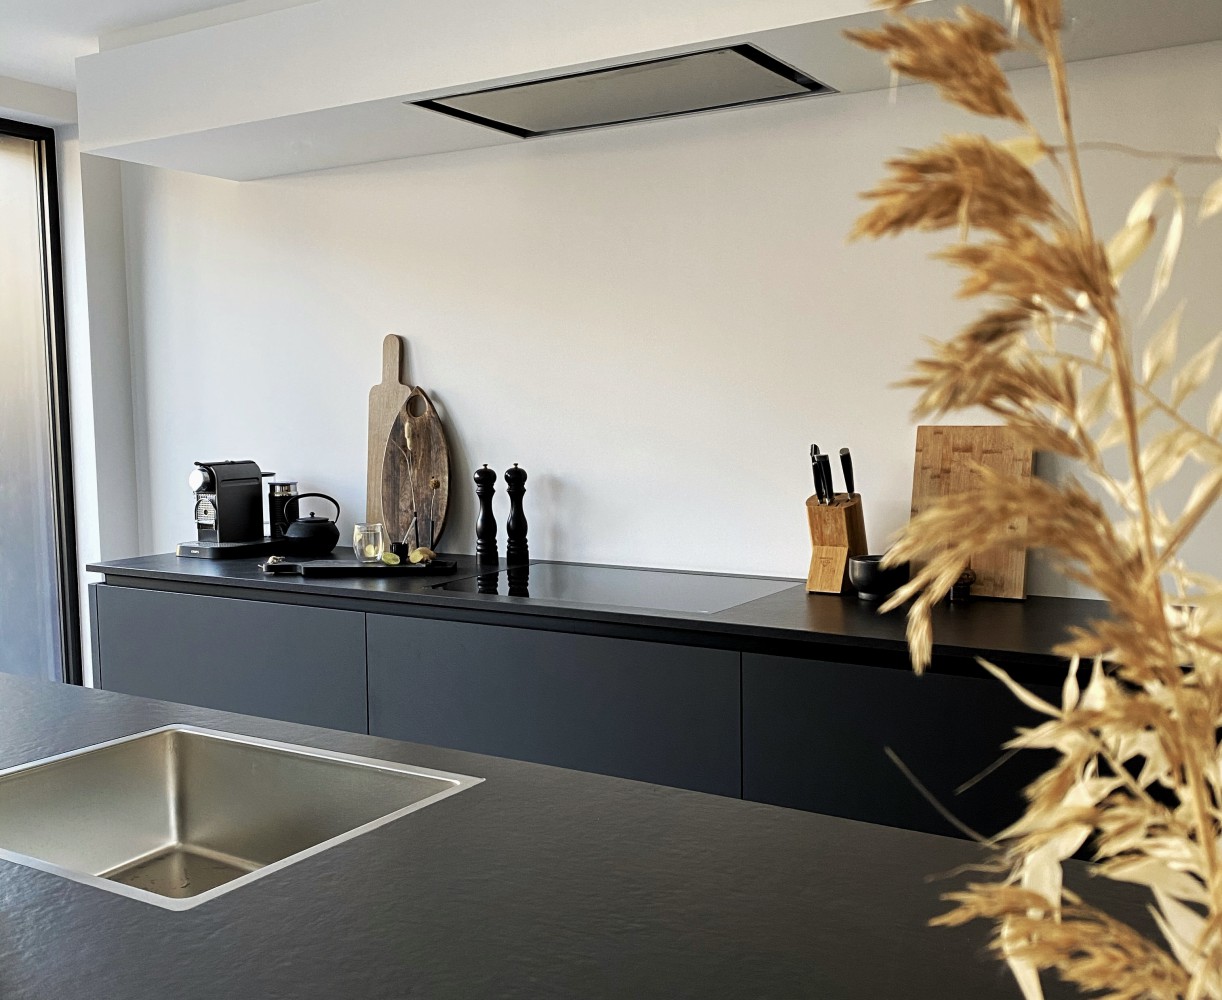 Benodigdheden Tips handboeien Keuken uitbouwen met glazen pui - Jellina Detmar Interieur & Styling blog